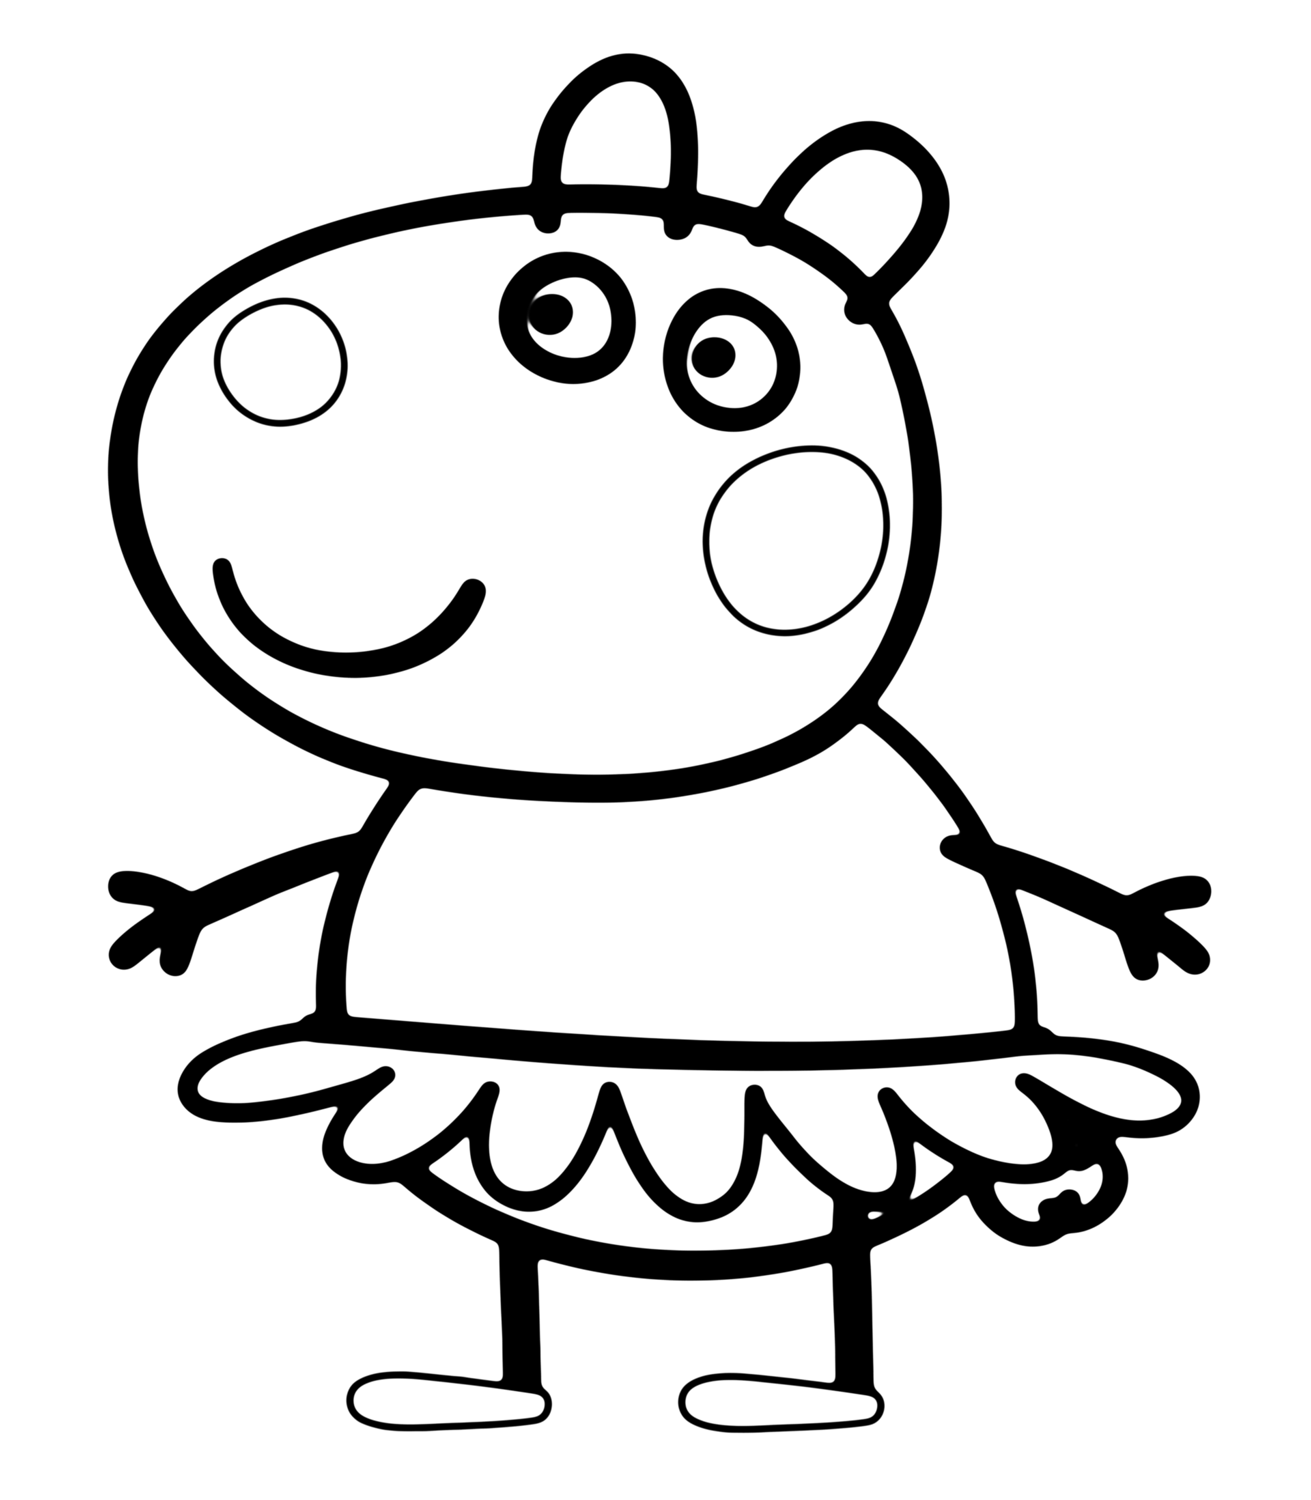 Suzy amica di peppa Pig ballerina disegno da colorare gratis